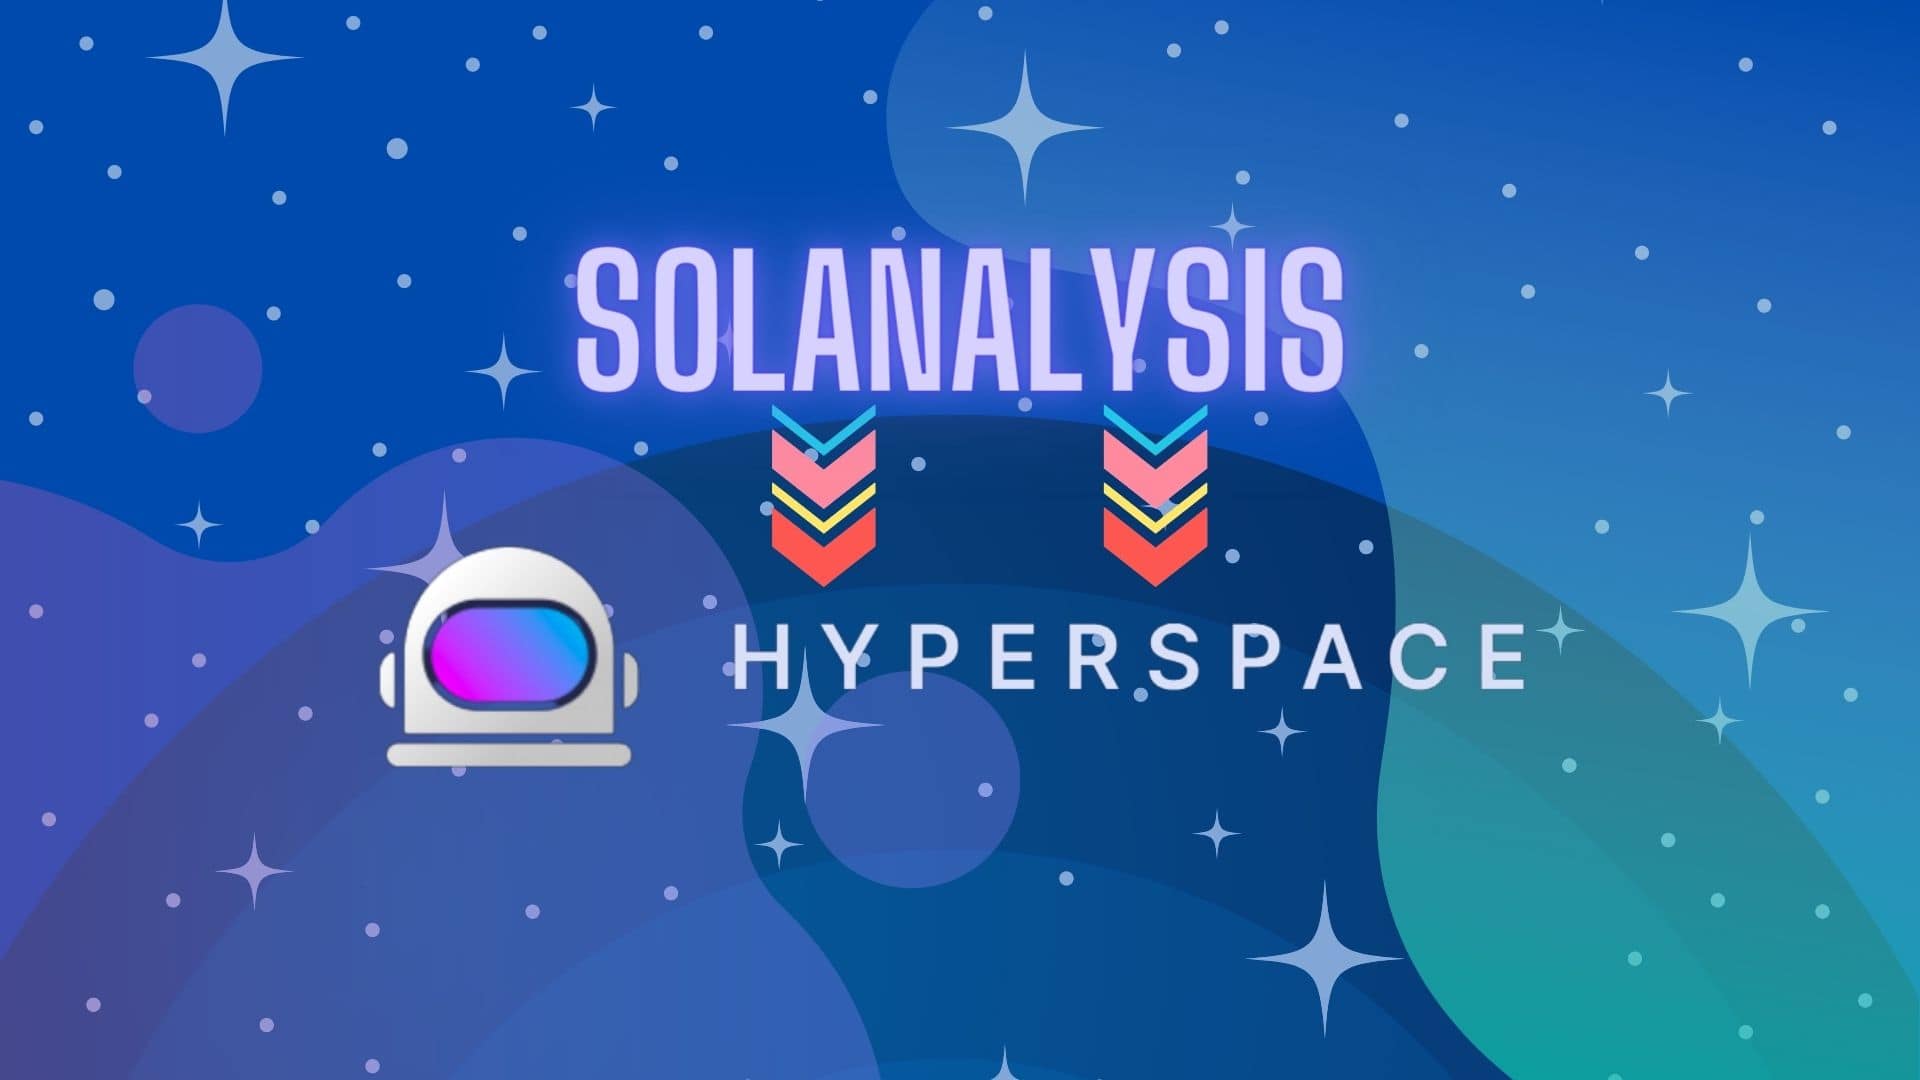 Solanalysis теперь Hyperspace - компания привлекла $4.5 млн в ходе раунда финансирования.